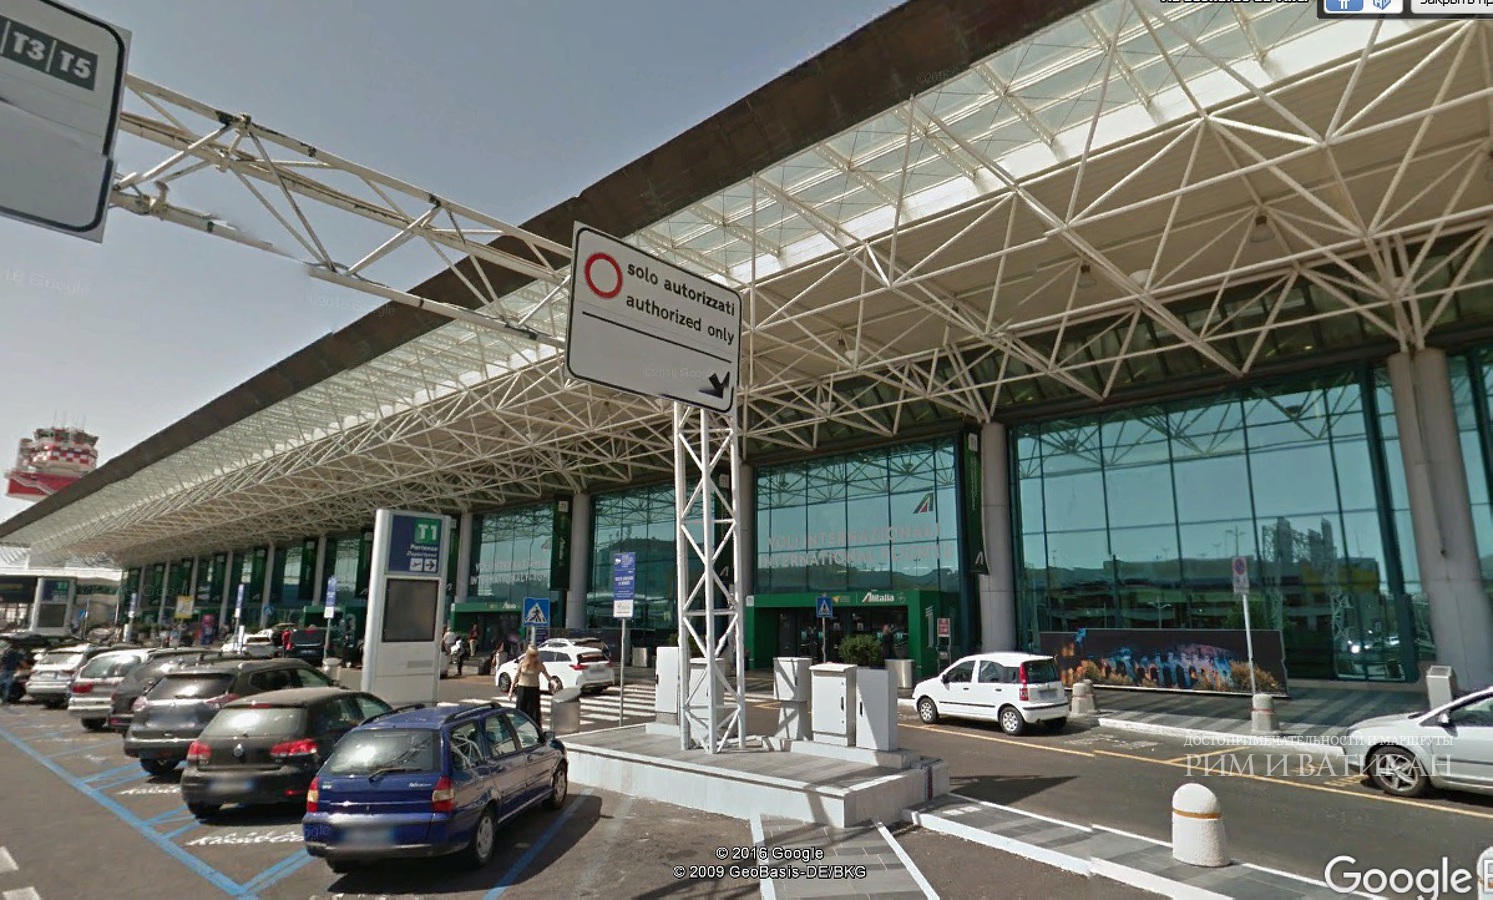 Аэропорт Фьюмичино в Риме, описание, терминалы, транспорт